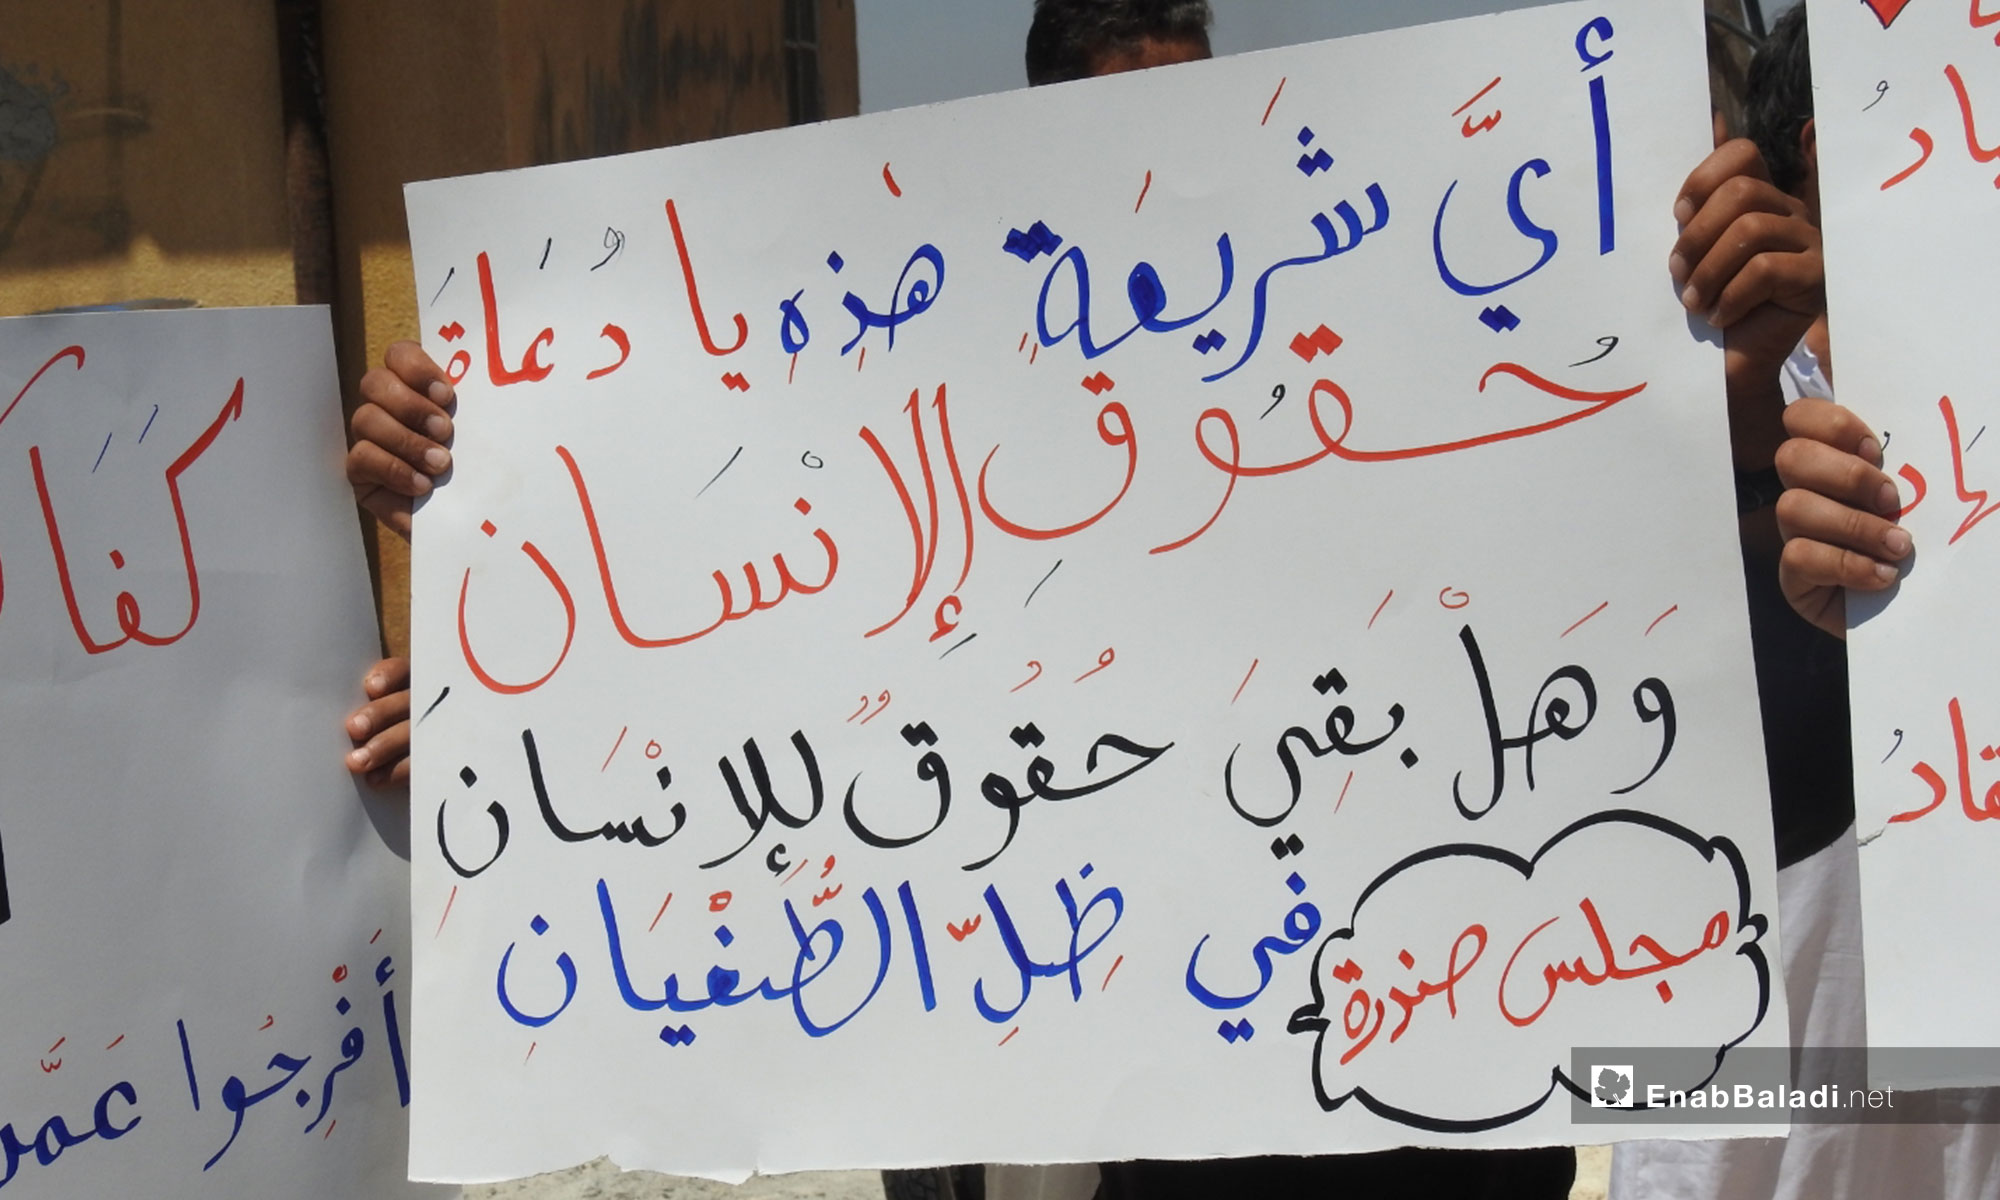 وقفة تضامنية لأجل المعتقلين السوريين في بلدة صندرة بريف حلب الشمالي - 10 من آب 2018 (عنب بلدي)